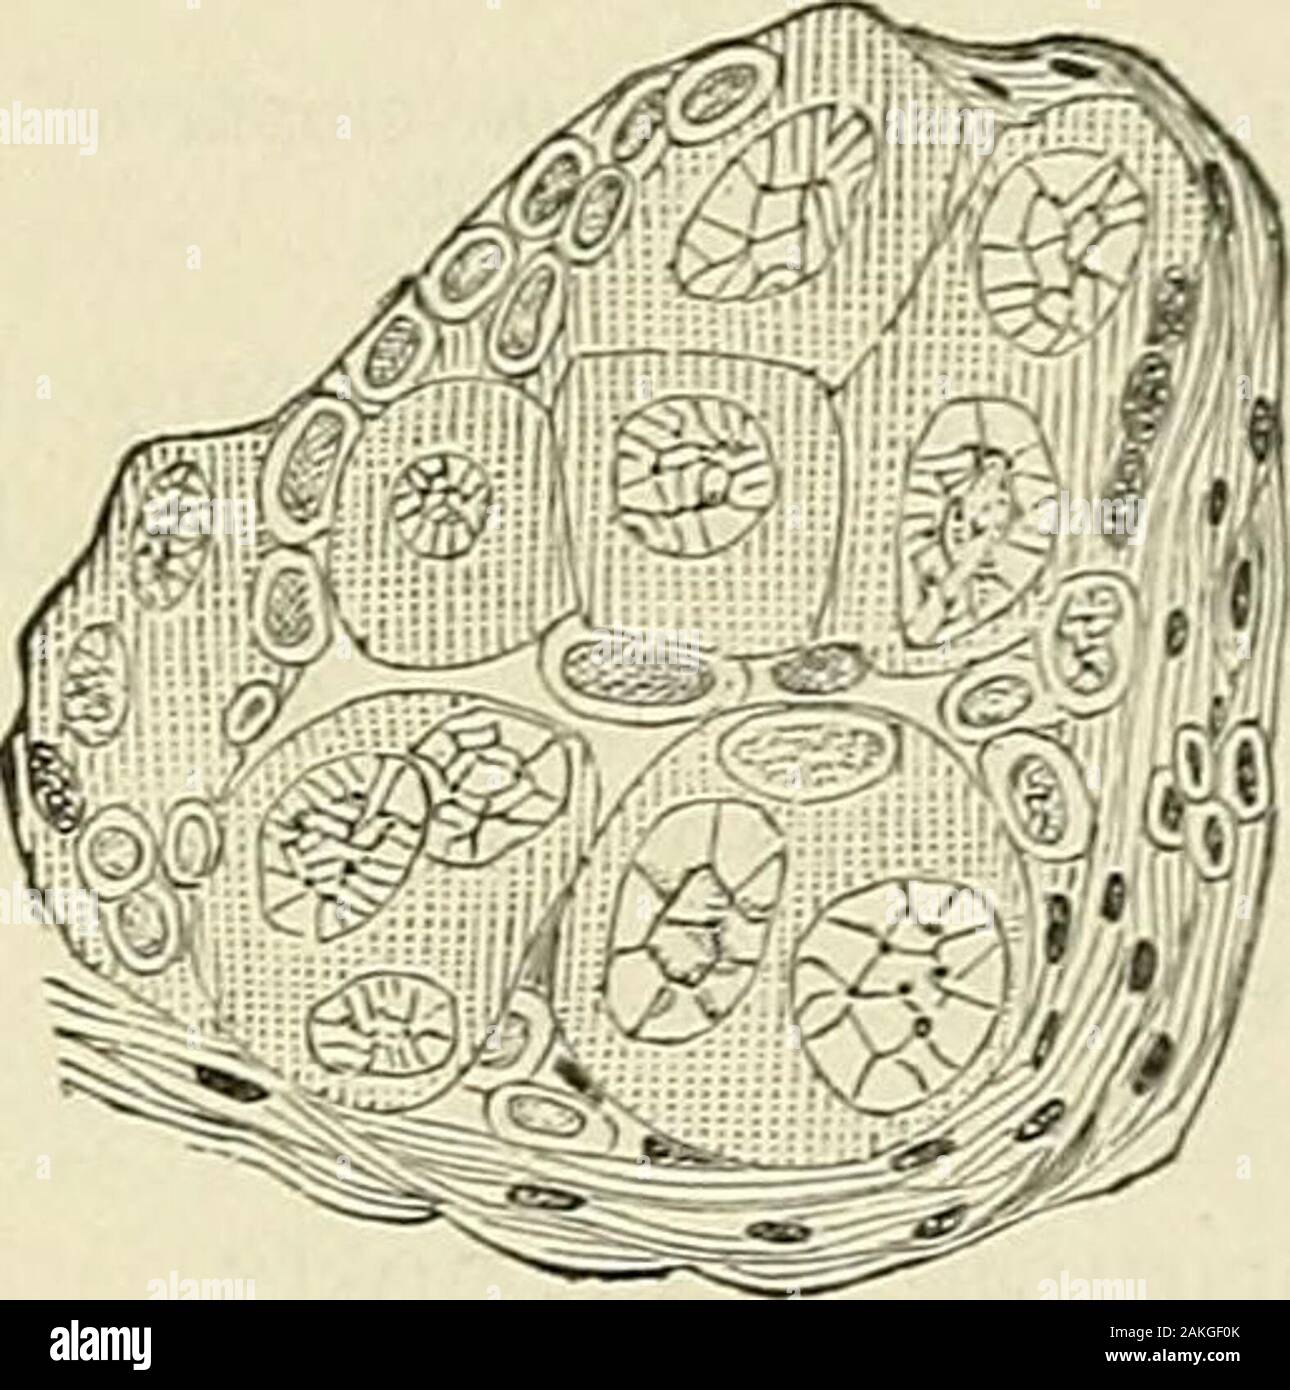 Les maladies de la femme et la chirurgie abdominale . Fig. 34 (après Balfour) -nid frommiddle offollicular couche, montrant l'épithélium formation : o, primitiveovum ; /e, cellules formant follicularepithelium ; d, o, cellules qui disparaissent.. Fig 35 (après Balfour) -Typicalepithelial nid. enfermé dans une cavité occupée par fluide et bordée par de plus petits  ; l'épithélium d'ovules (d, o, fig. 34) pas entouré ; des cellules plus petites {b, c), avec modification de noyaux de destination douteux ; et les petites cellules (/, e)à l'évidence pour former épithélium folliculaire. L'inspection des asingle comme nid, dit M. Balfour-et en cela je partage entièrement-i Banque D'Images